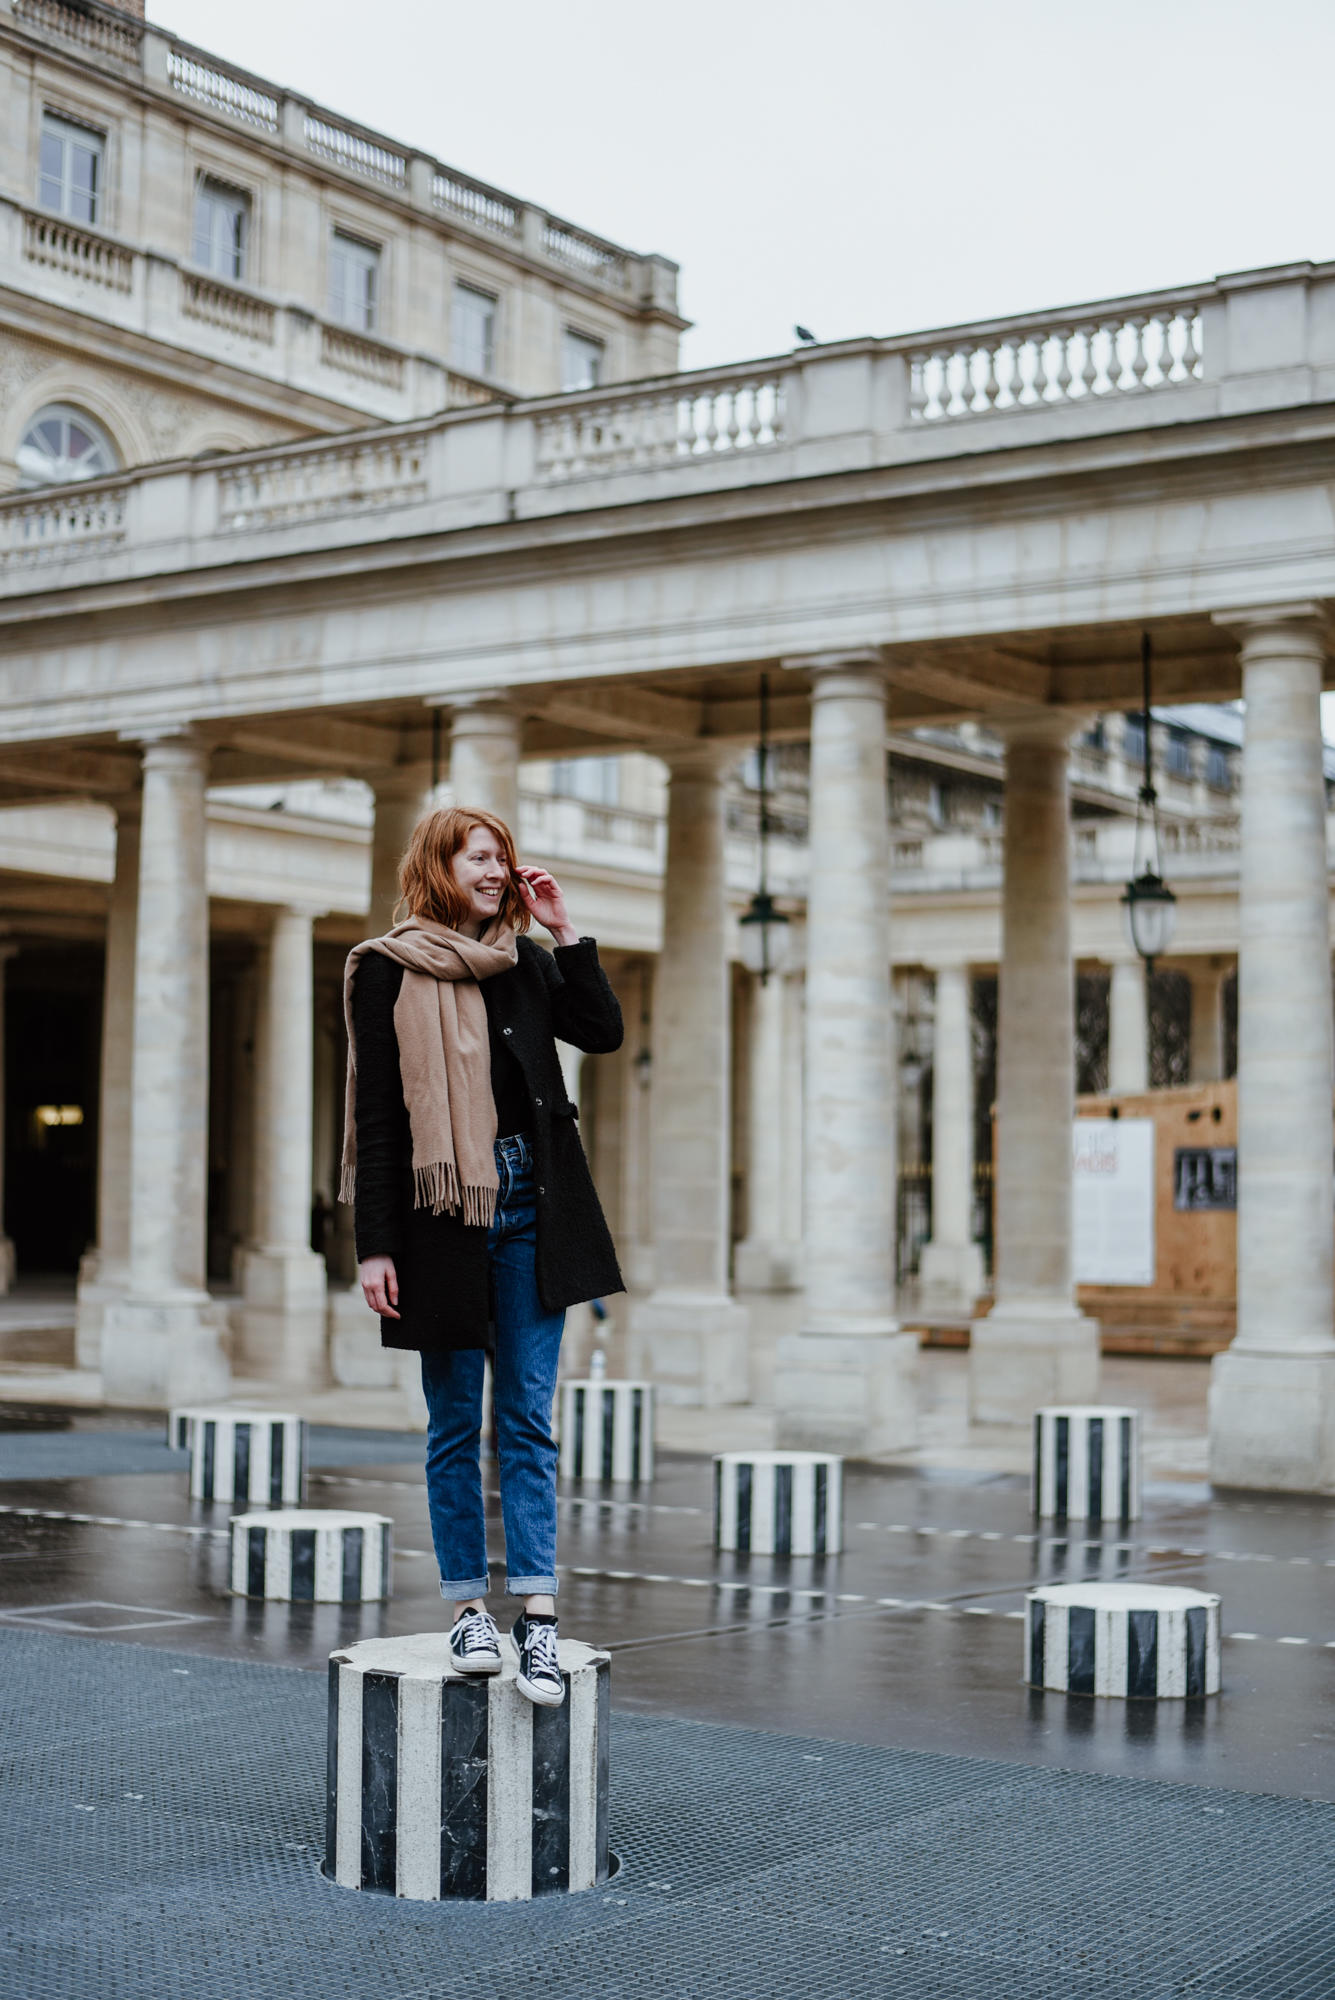 Girl with Les Deux Plateaux Colonnes de Buren at Palais Royal in Paris